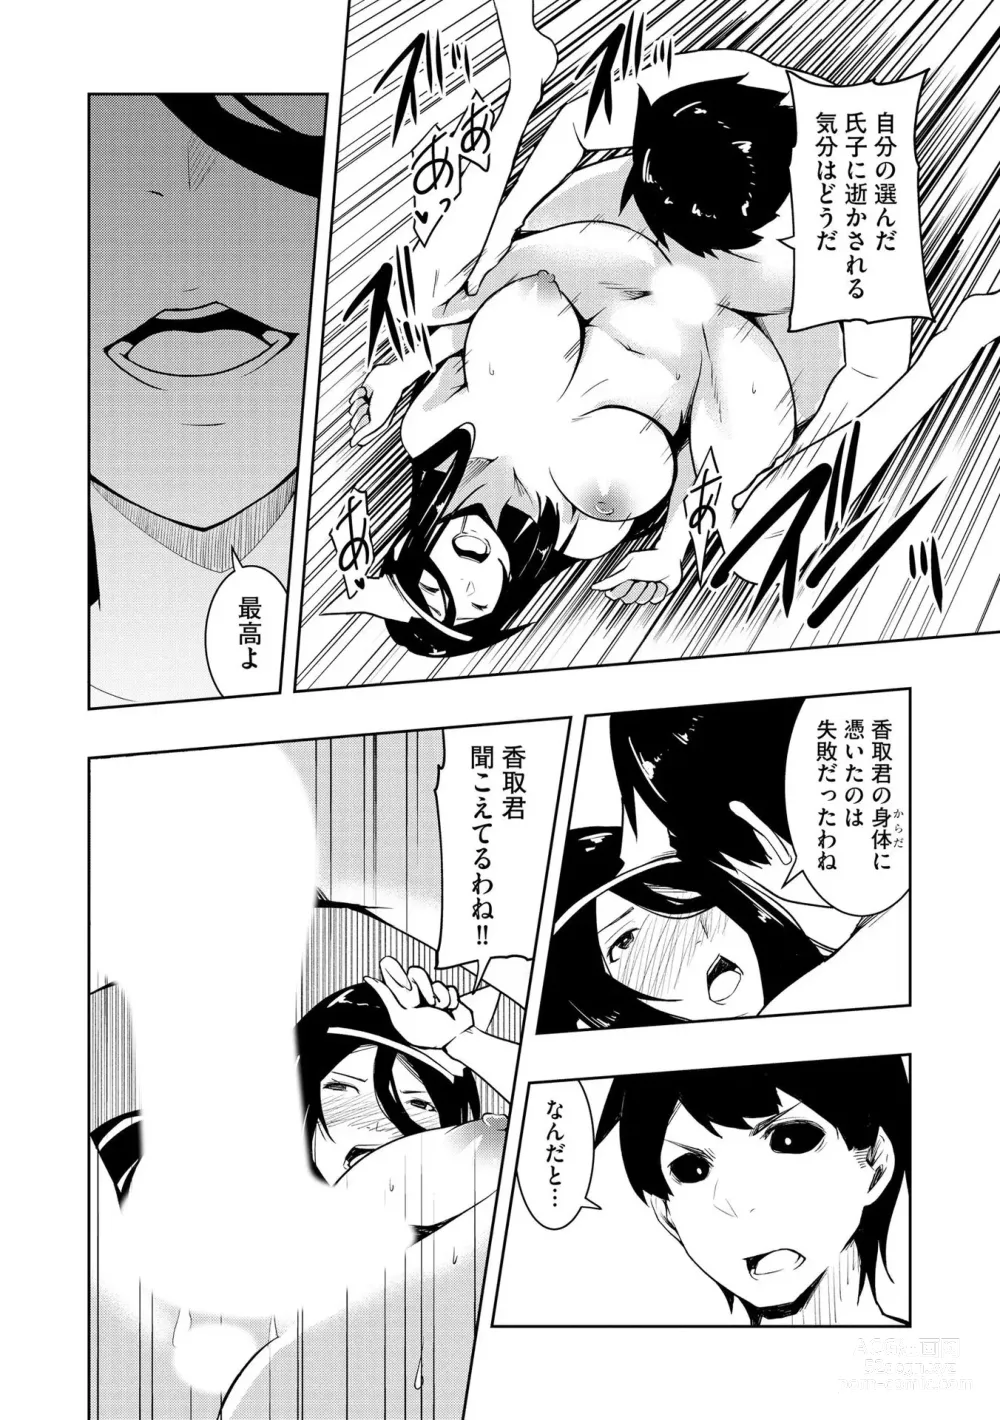 Page 193 of manga Kai-In Hontou wa Yarashii Toshi Densetsu